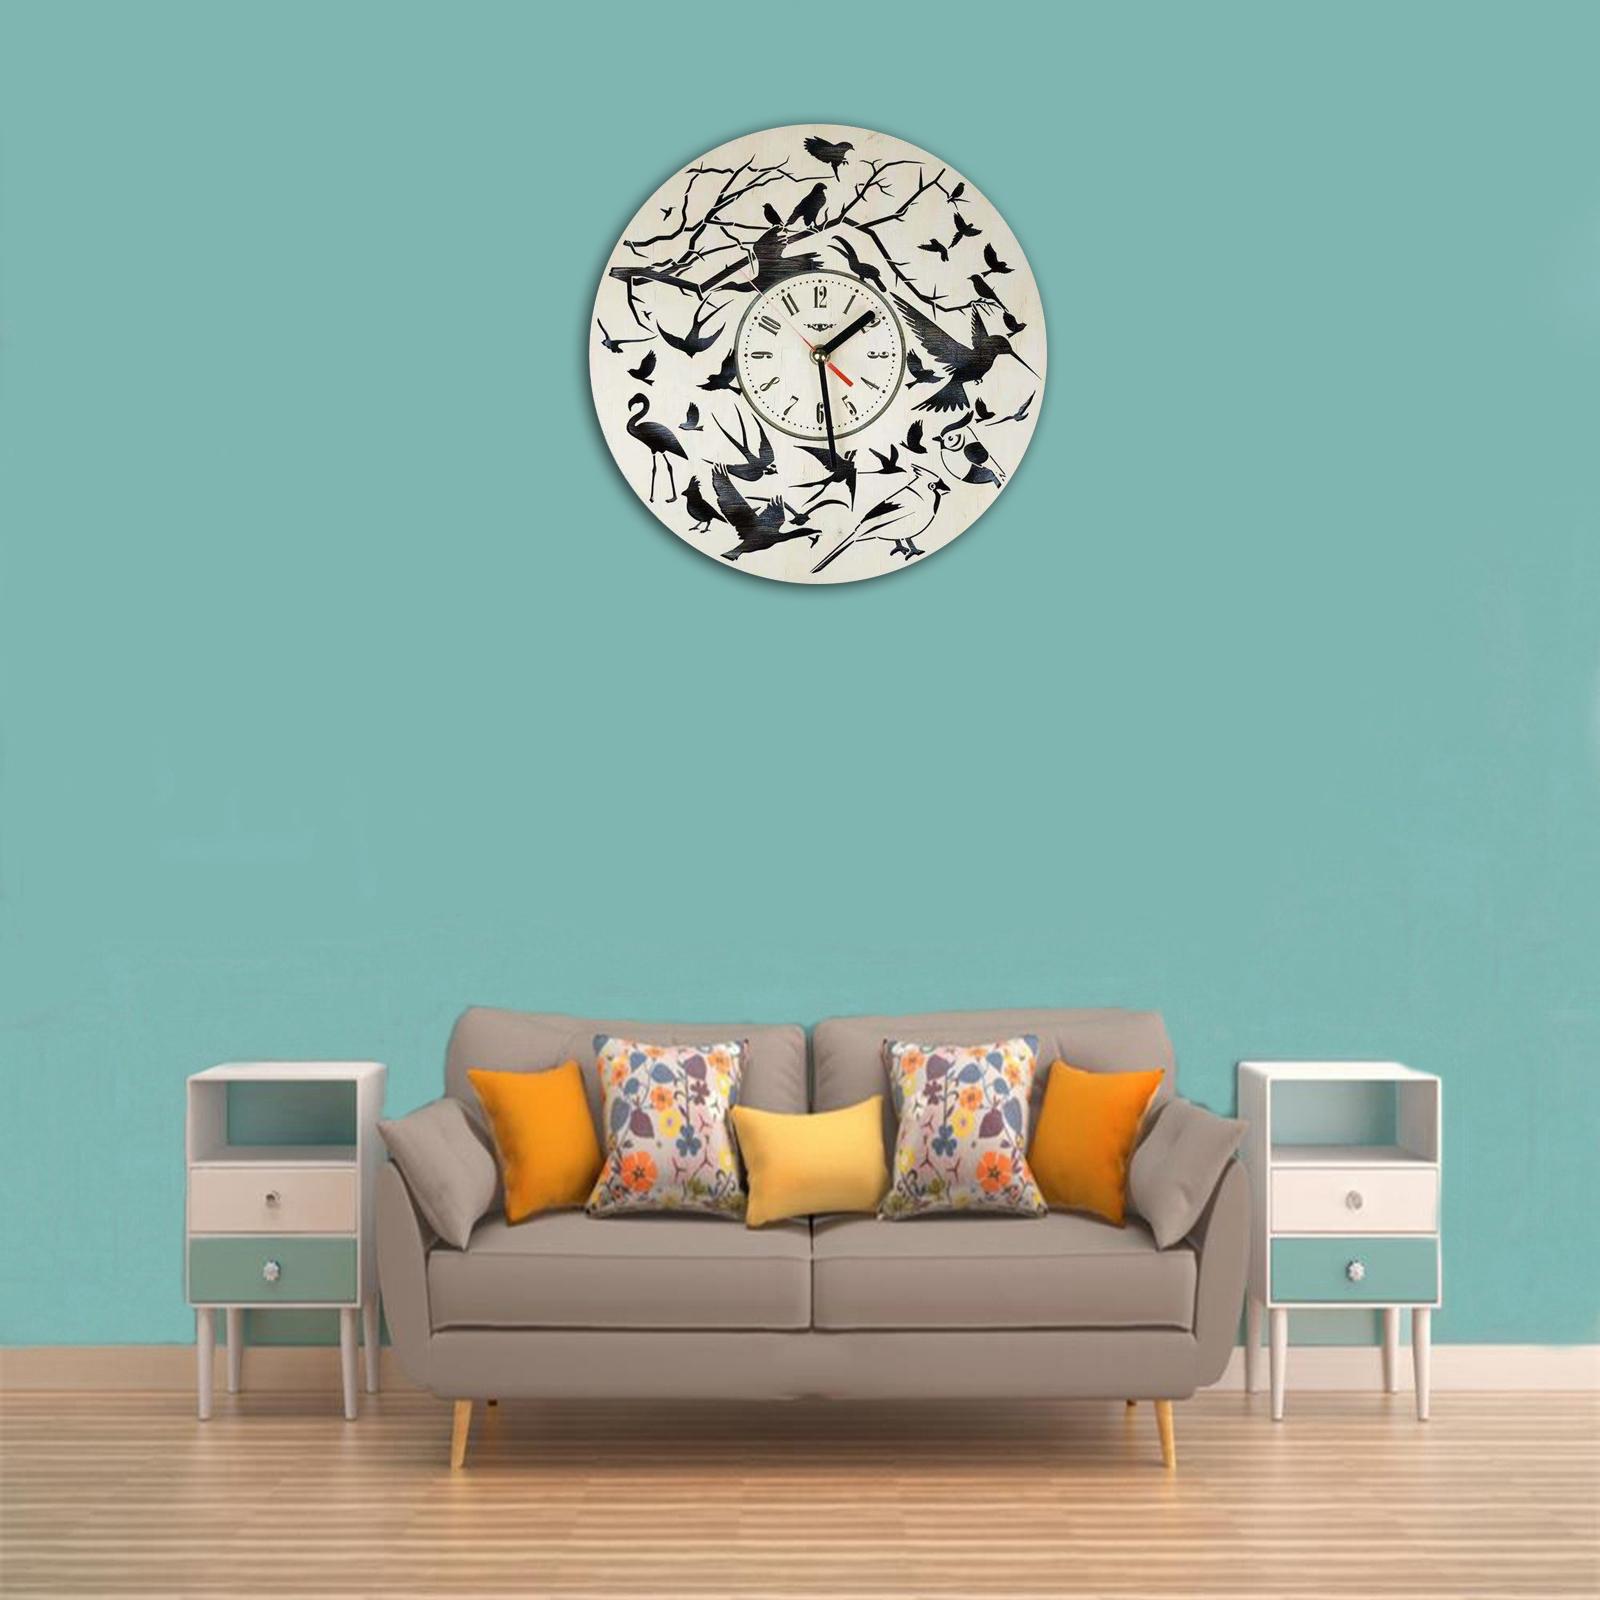 Creative Wall Clock Quartz Analog Hanging Clocks Home Decor Birds